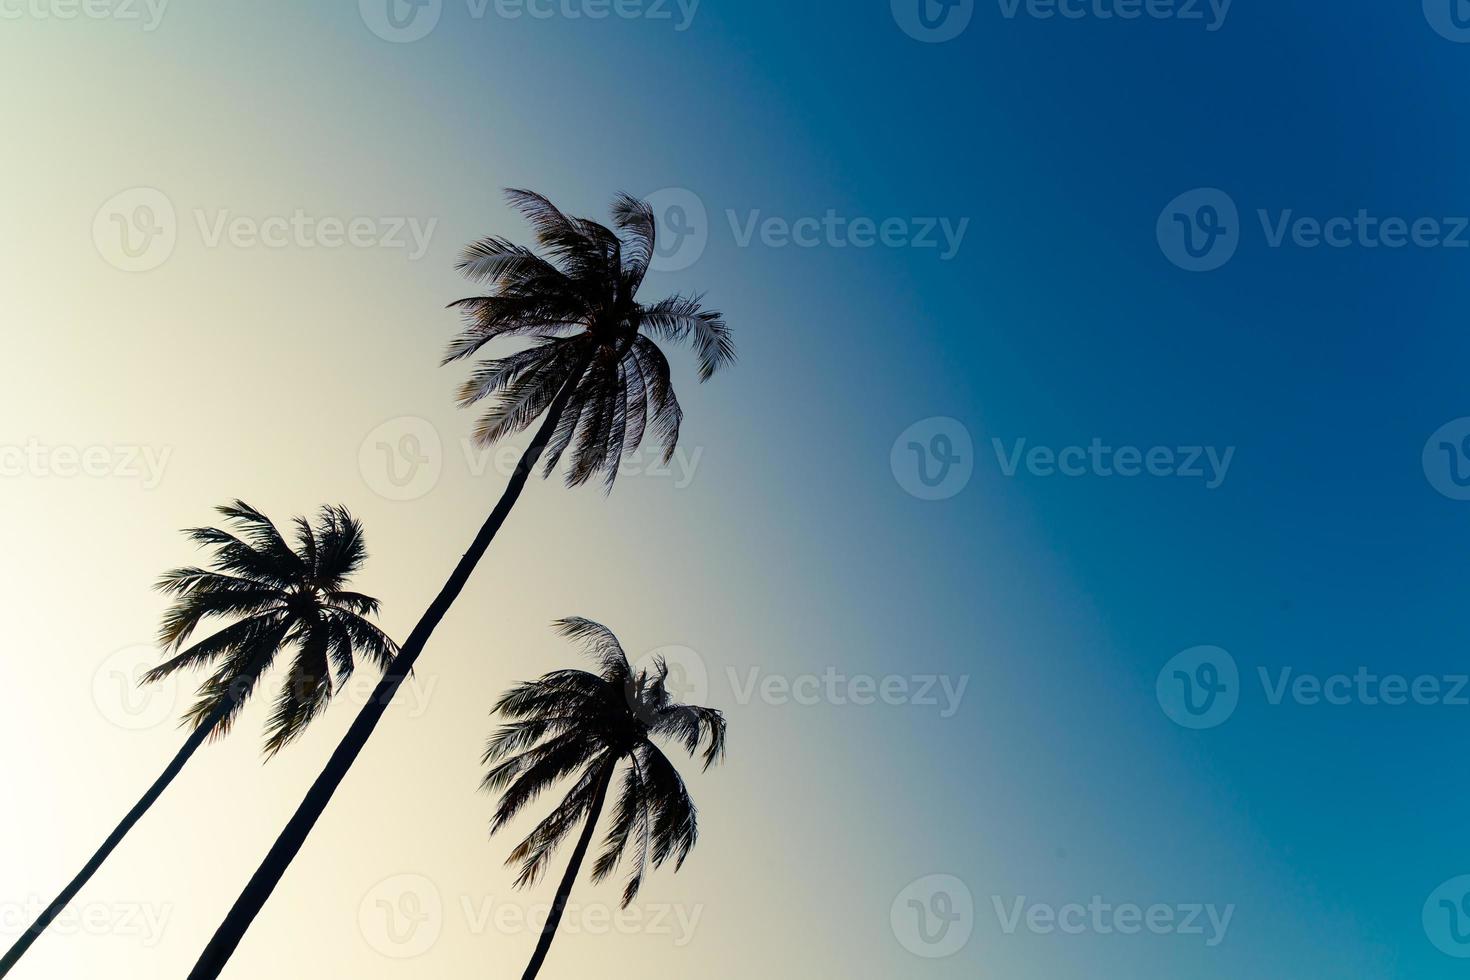 kokospalm met prachtige lucht foto